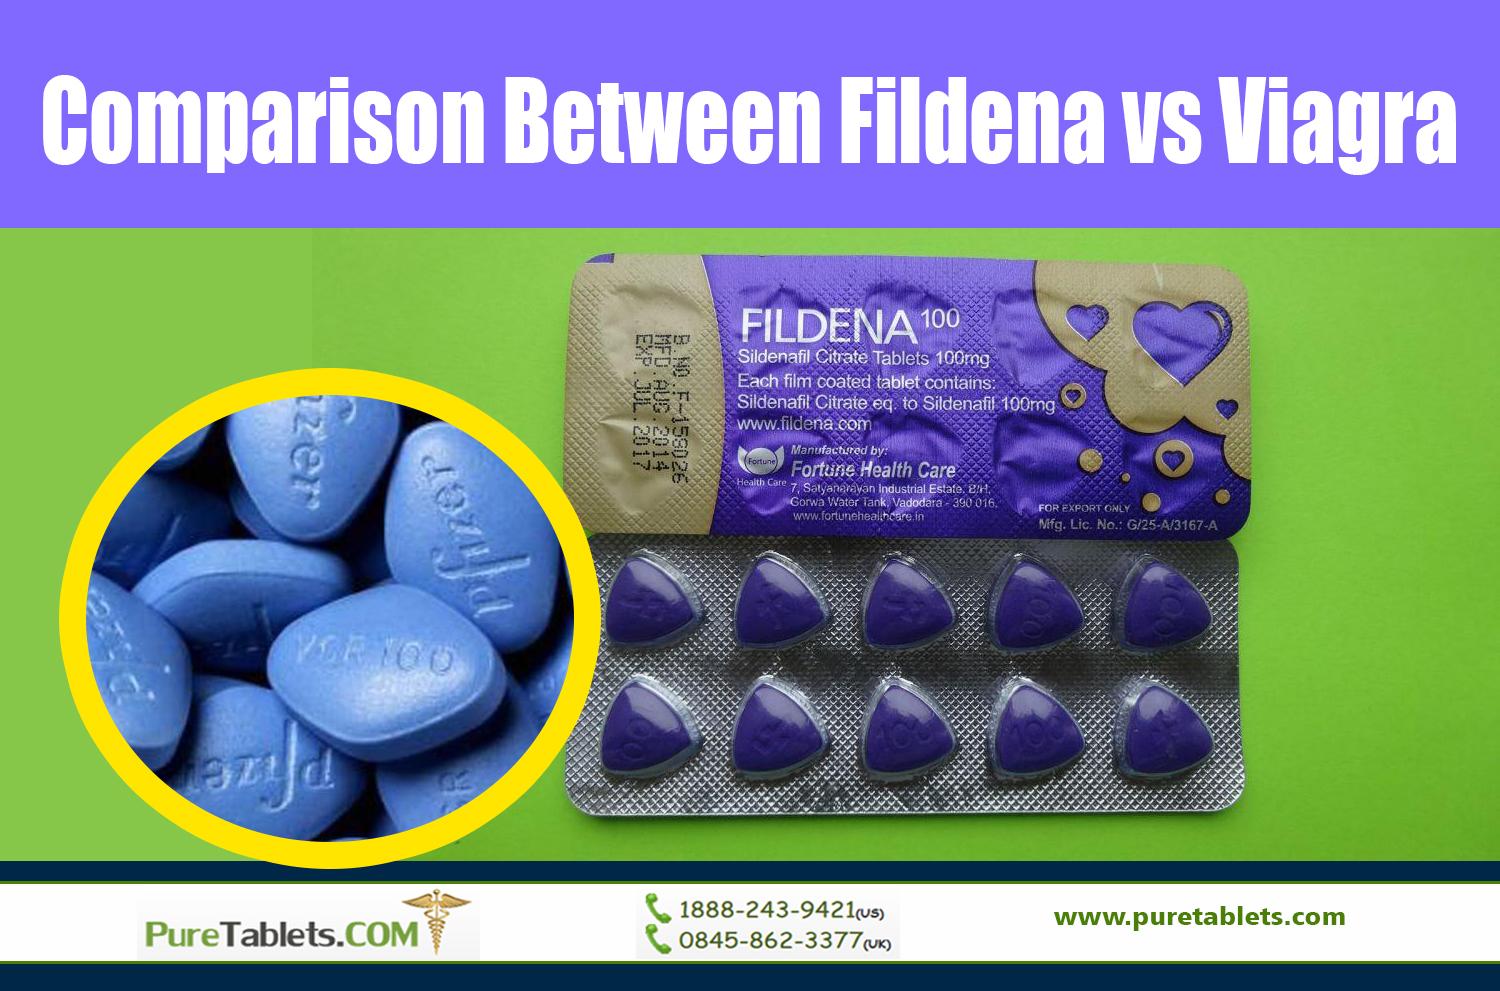 Comparison Between Fildena vs Viagra